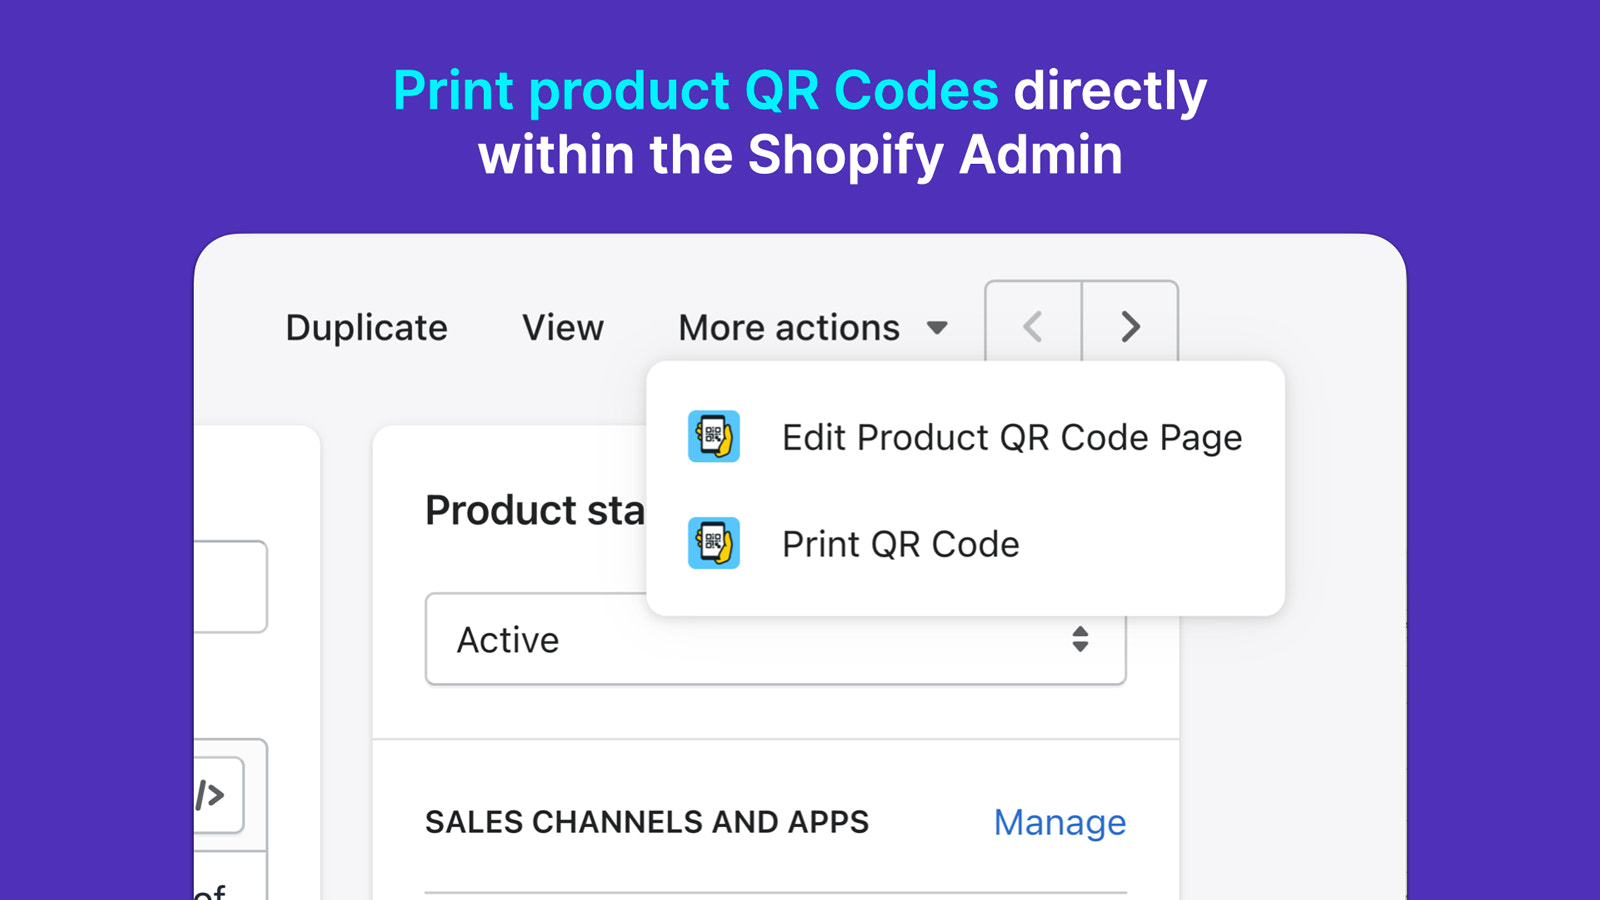 Drucken Sie Produkt-QR-Codes direkt aus dem Shopify-Admin